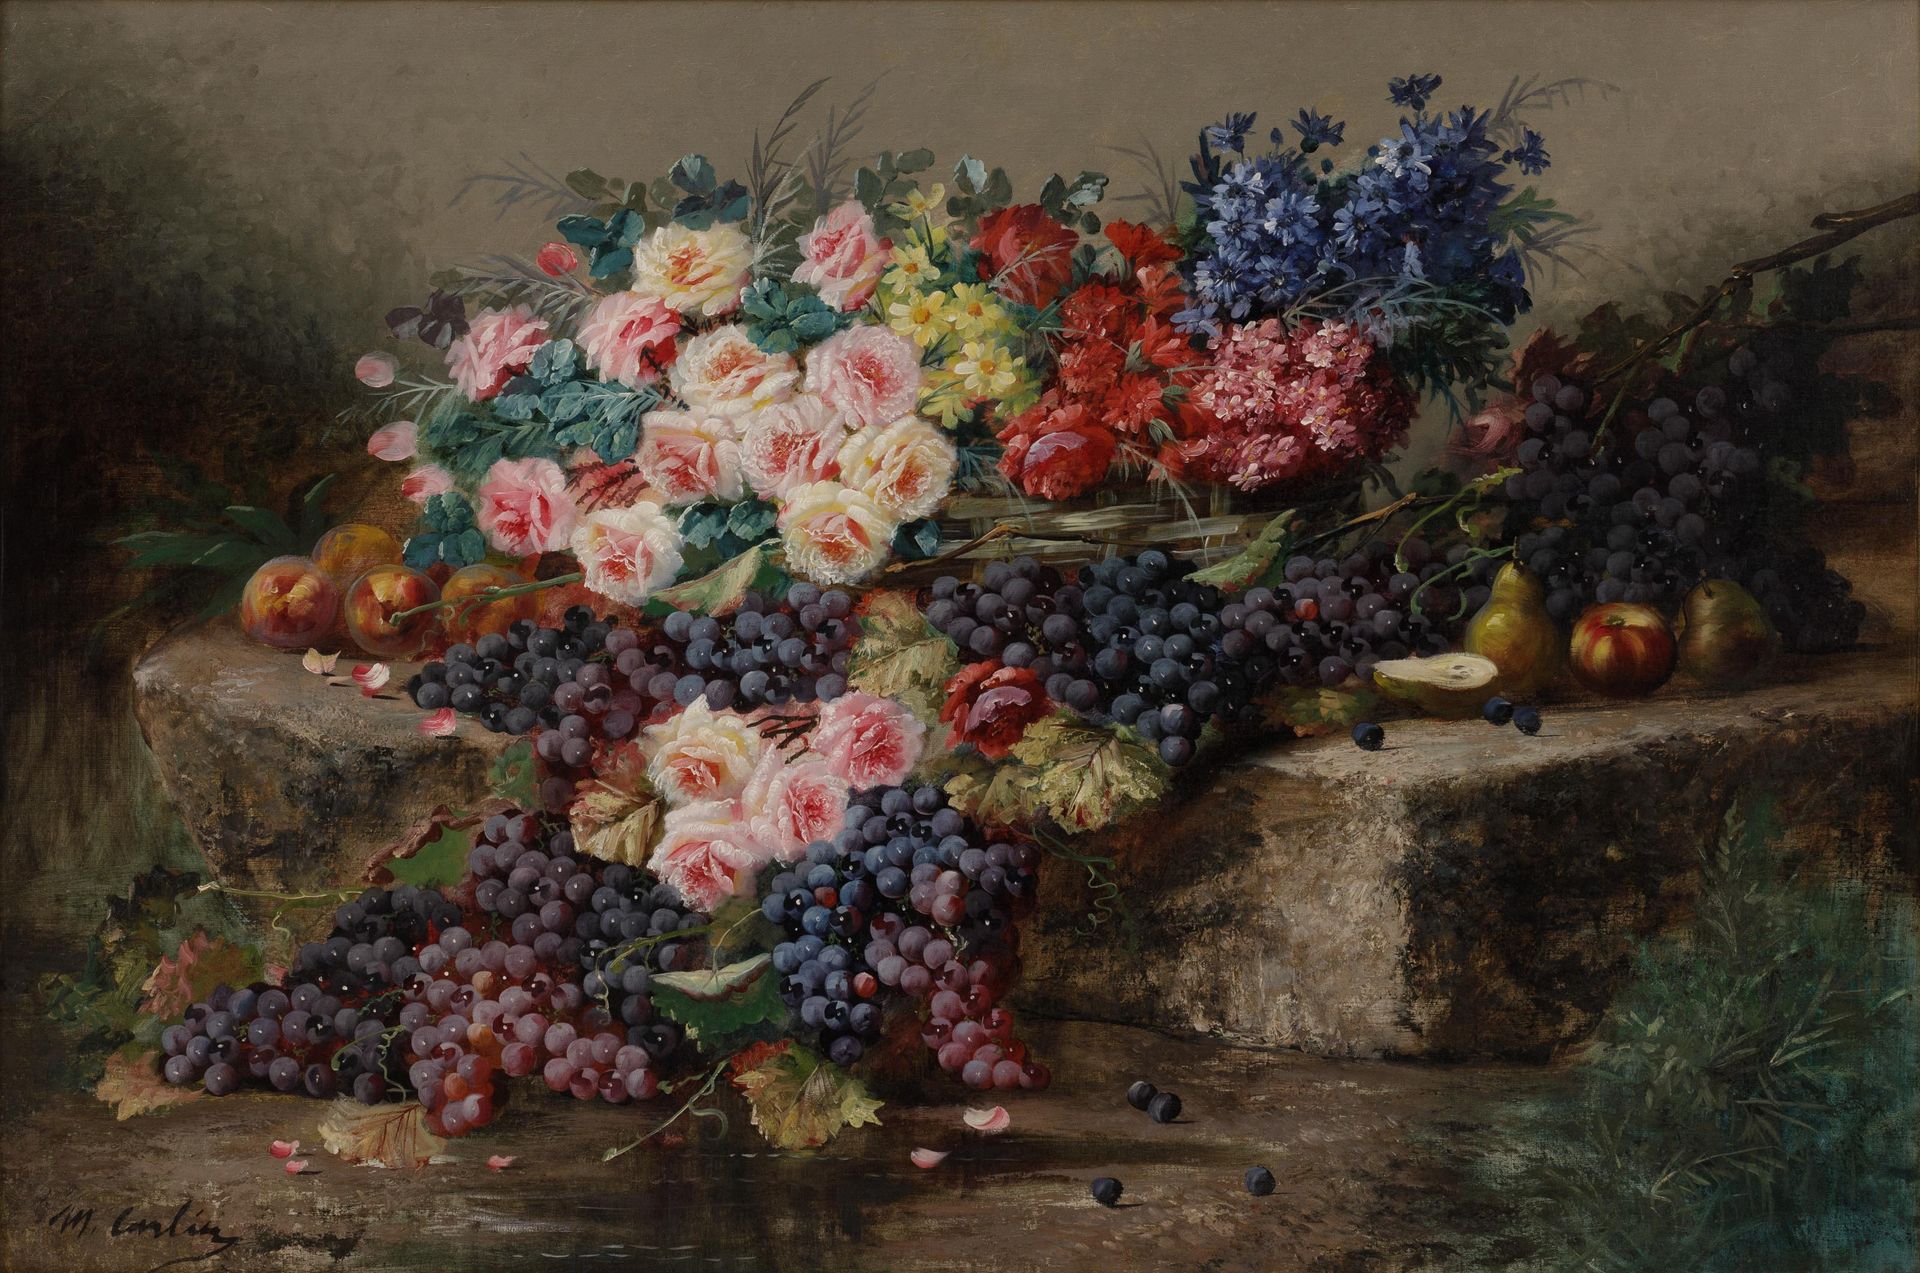 Max Carlier (1872-1938) 石头平台上的鲜花、成串的葡萄、桃子、苹果和梨子的静物画。

布质。签名为 "M.卡里尔'。

鎏金框架。



&hellip;